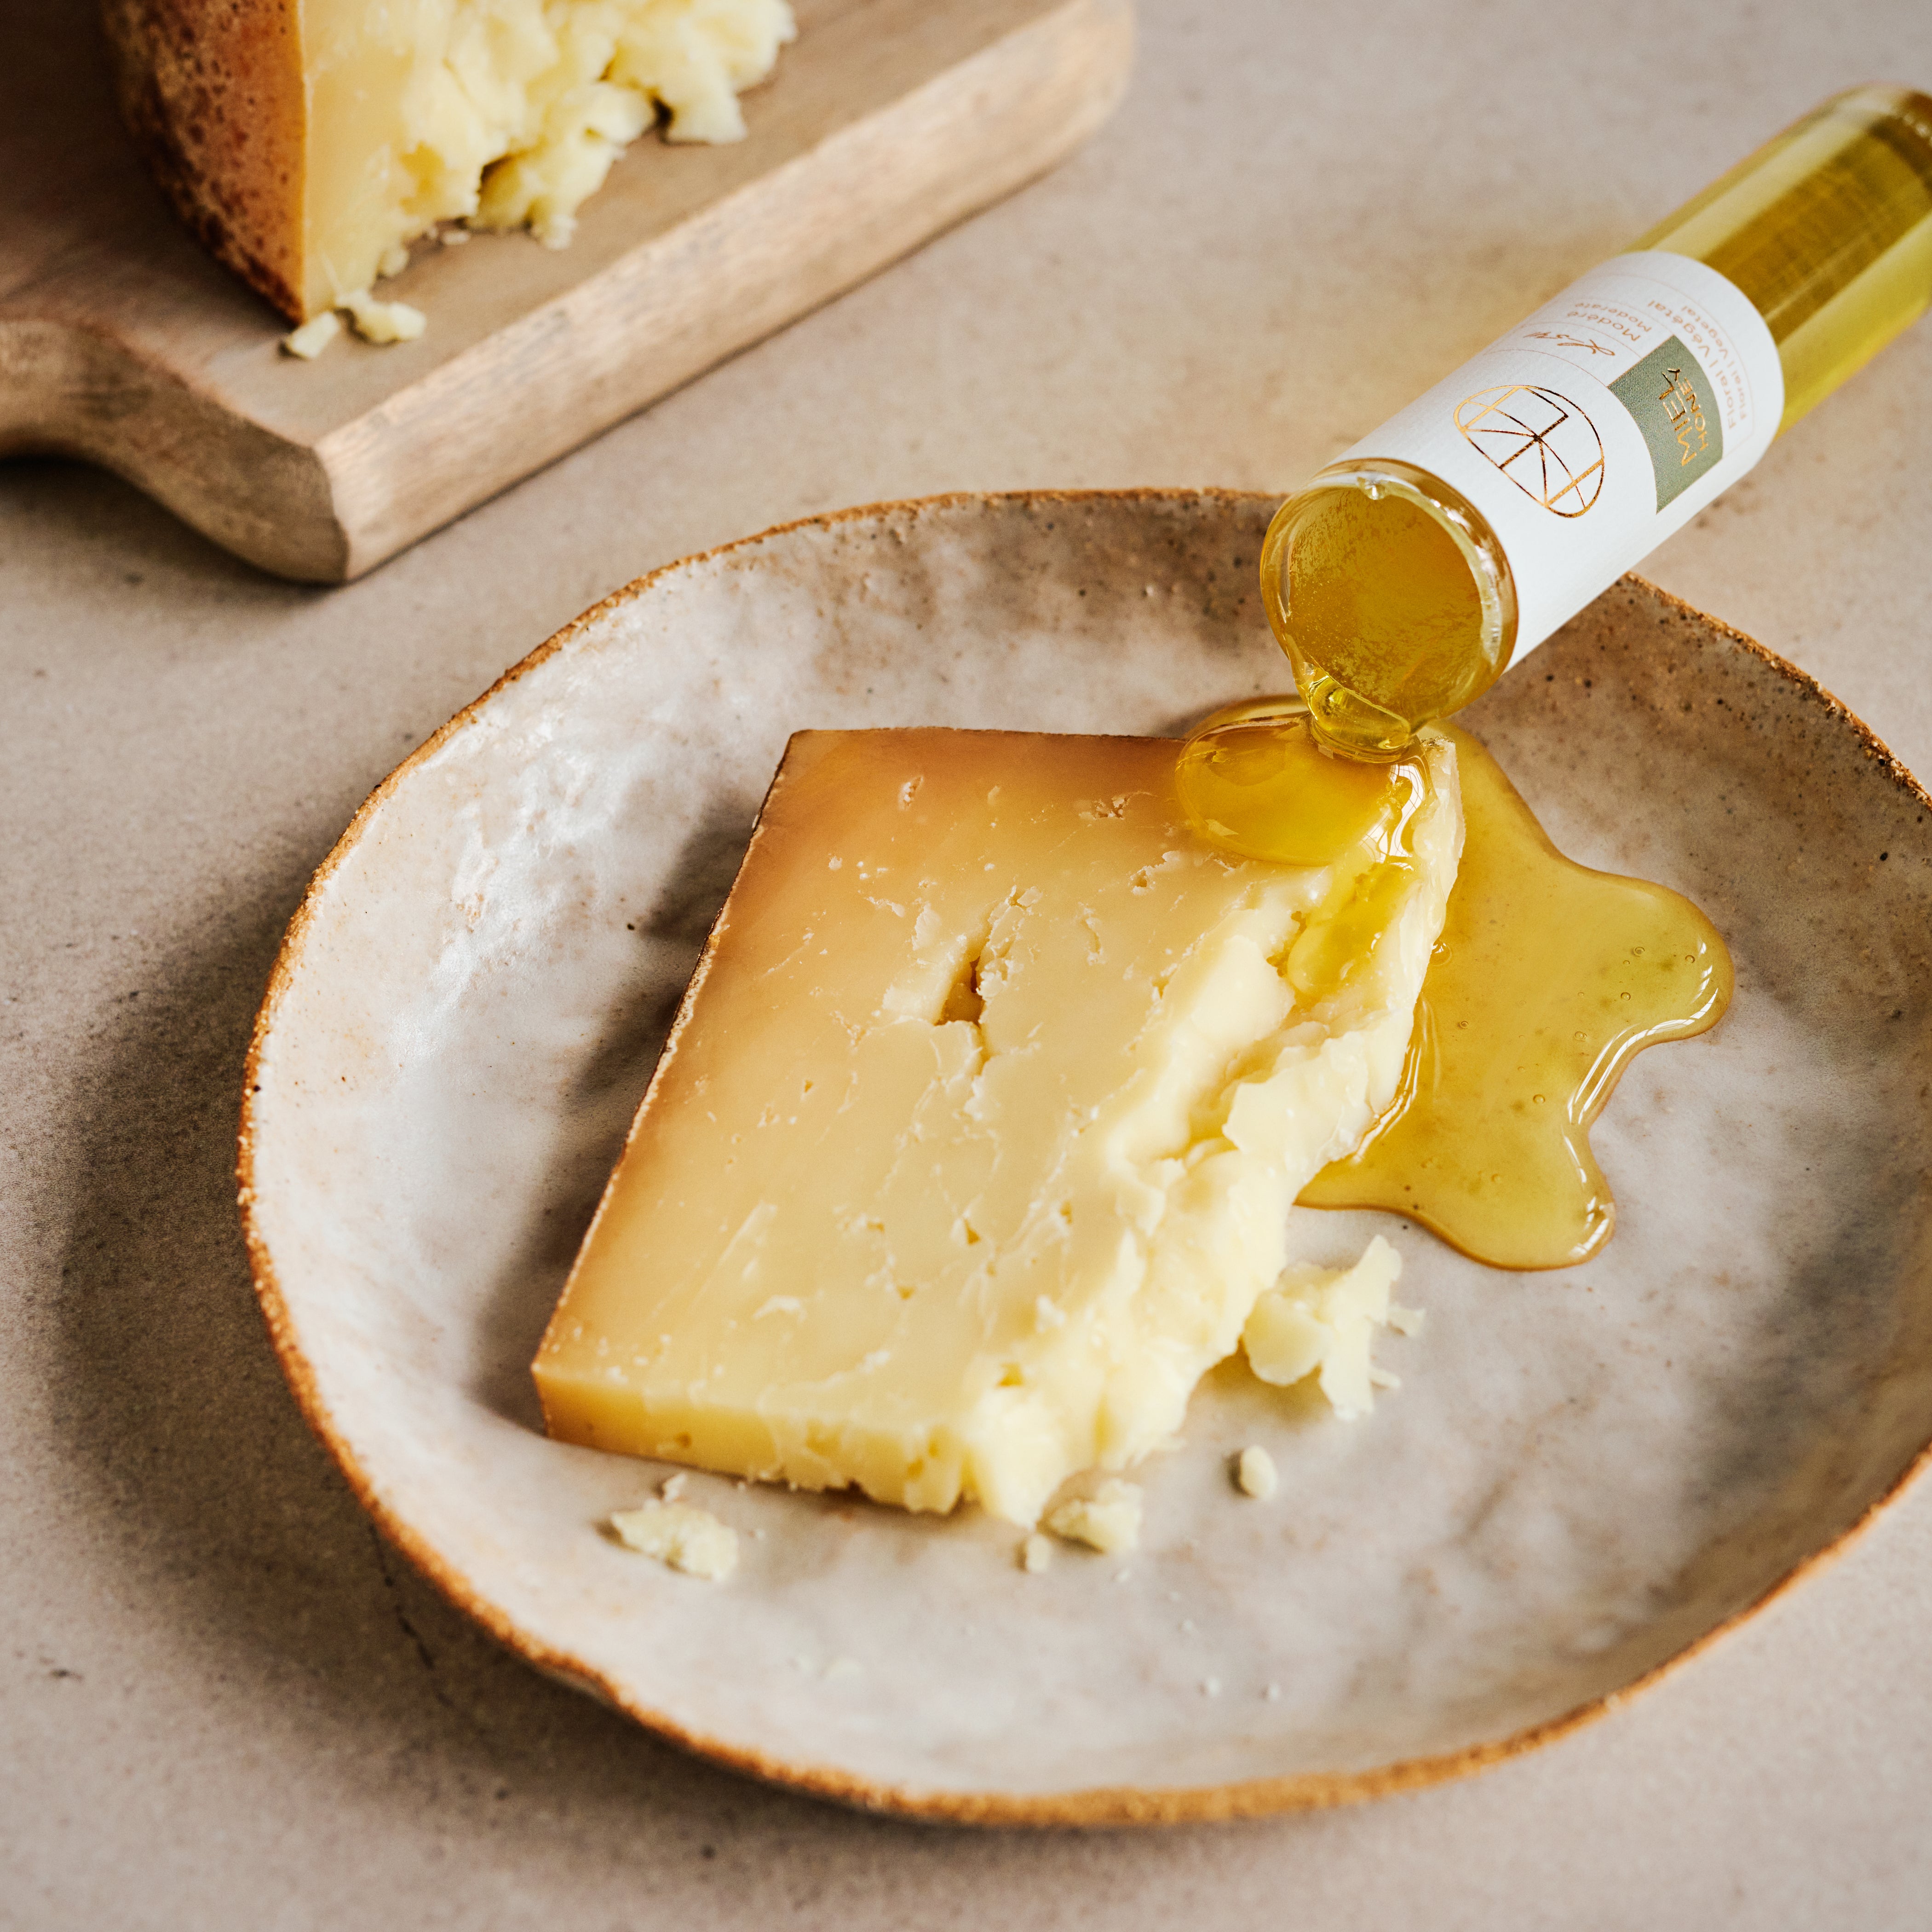 L-541-Miel-de-trefle-sur-fromage-a-pate-ferme-dans-une-assiette